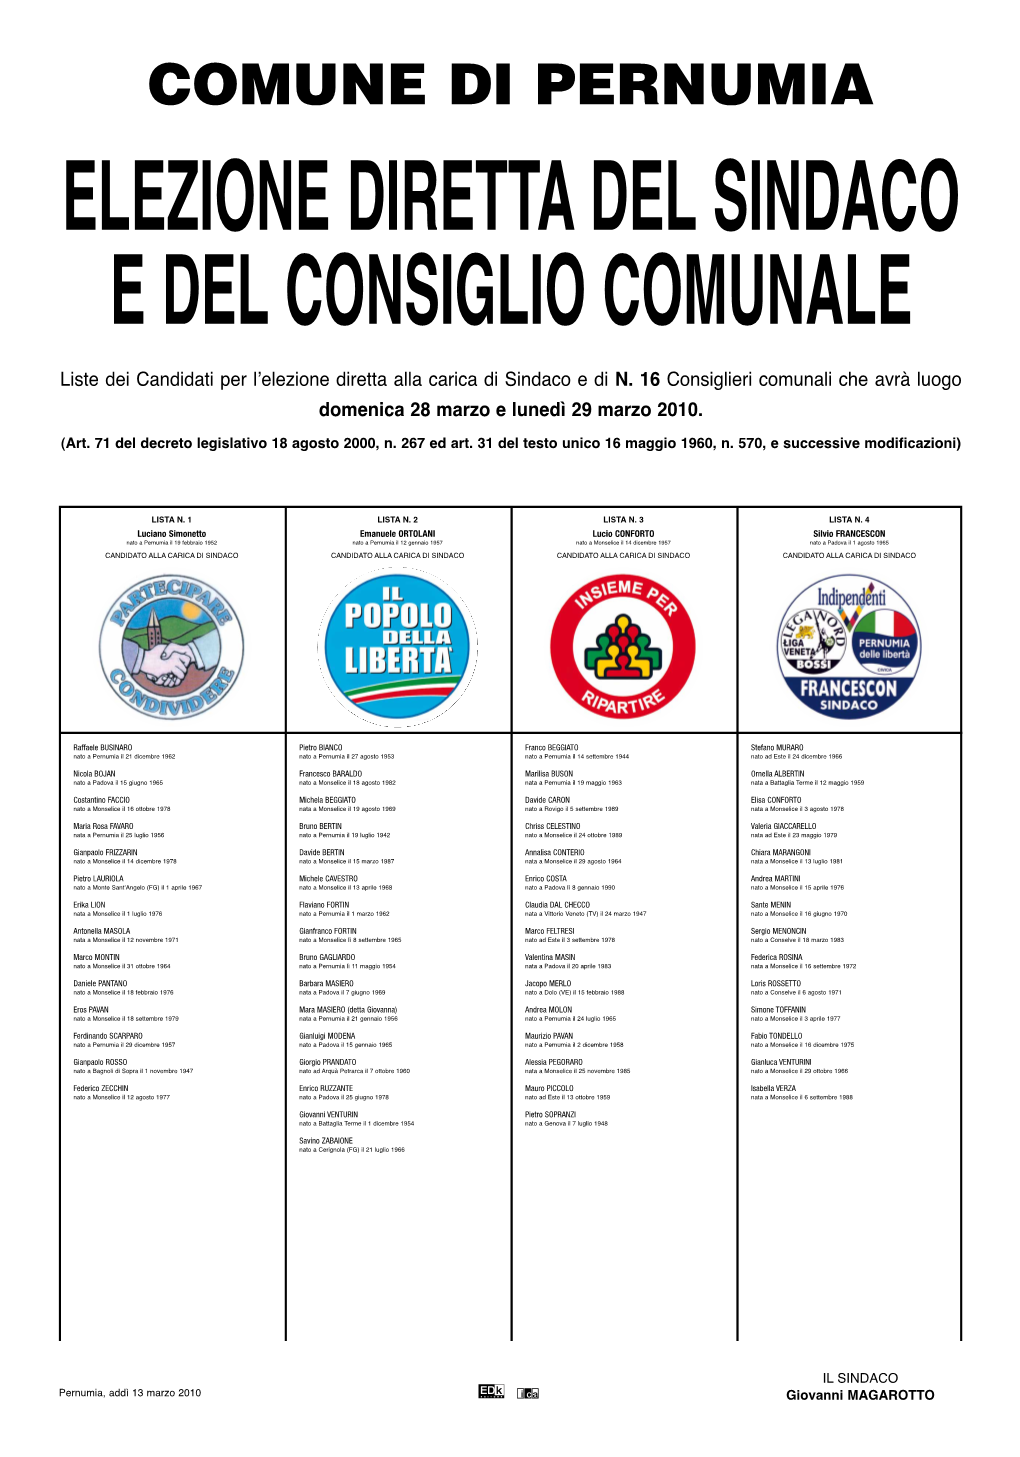 Liste Dei Candidati Per L'elezione Diretta Alla Carica Di Sindaco E Di N. 16 Consiglieri Comunali Che Avrà Luogo Domenica 28